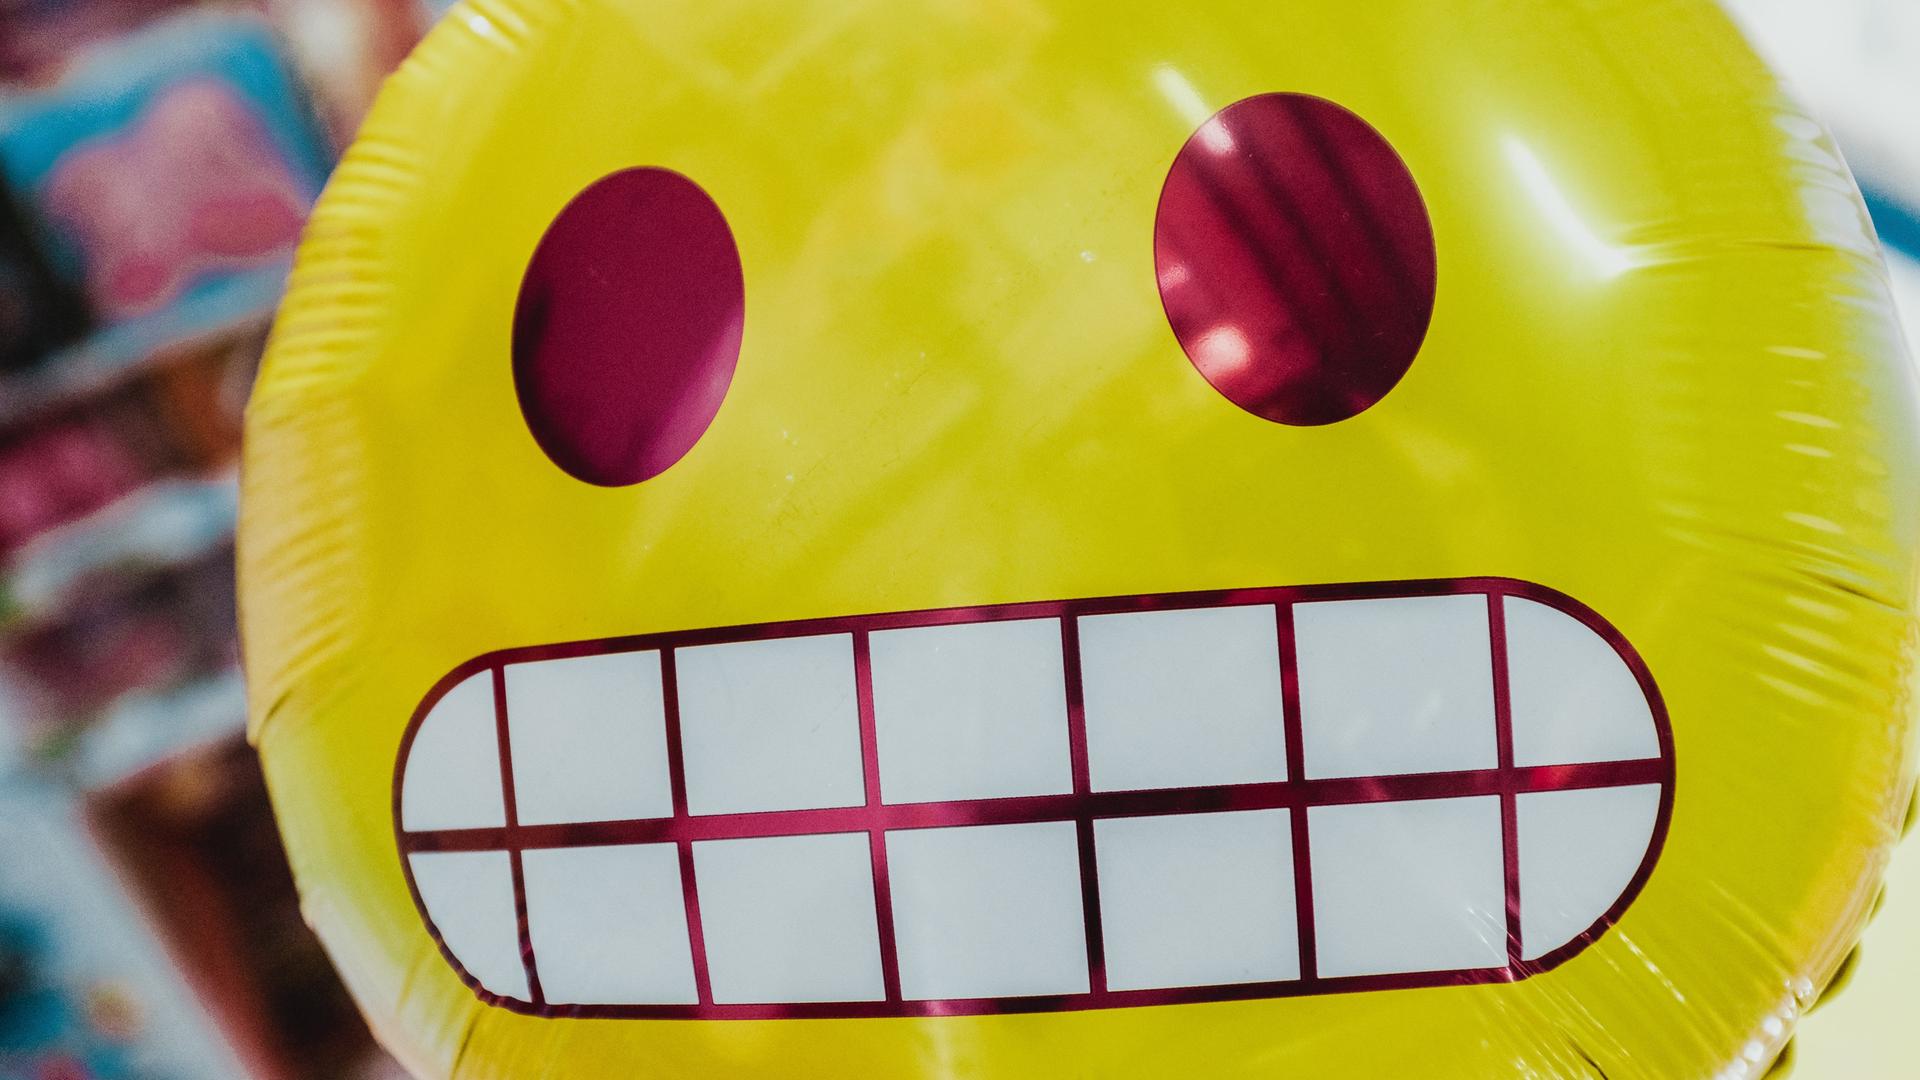 Ein runder gelber Ballon mit einem Emoji-Gesicht, das Zähne zeigt.